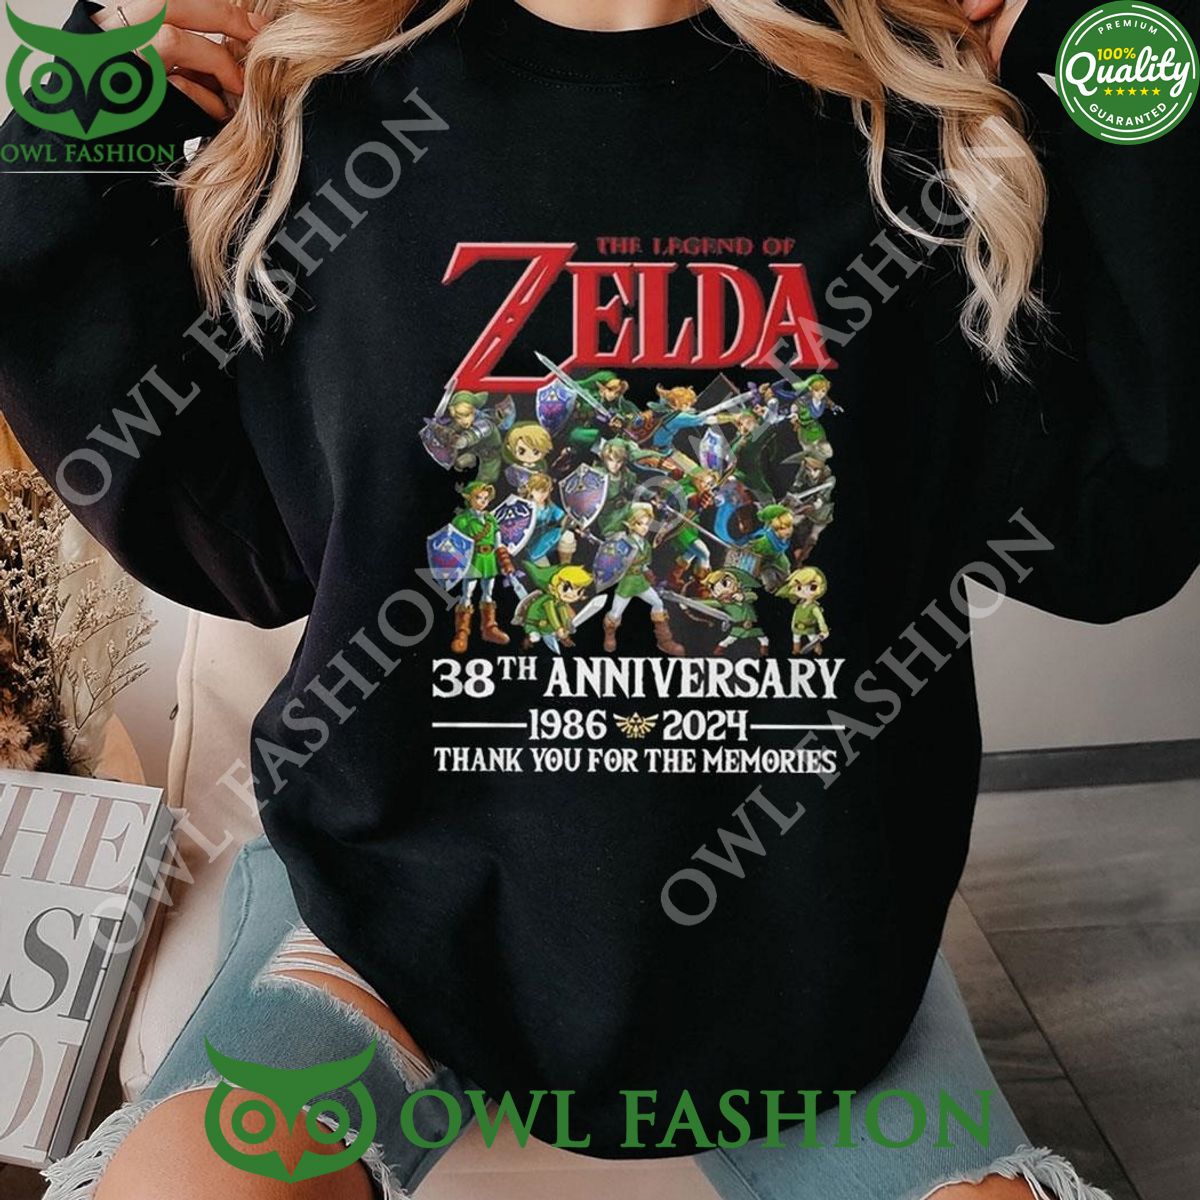 The Legends Of Zelda 38th Anniversary 1986-2024 Memories Hoodie Shirt